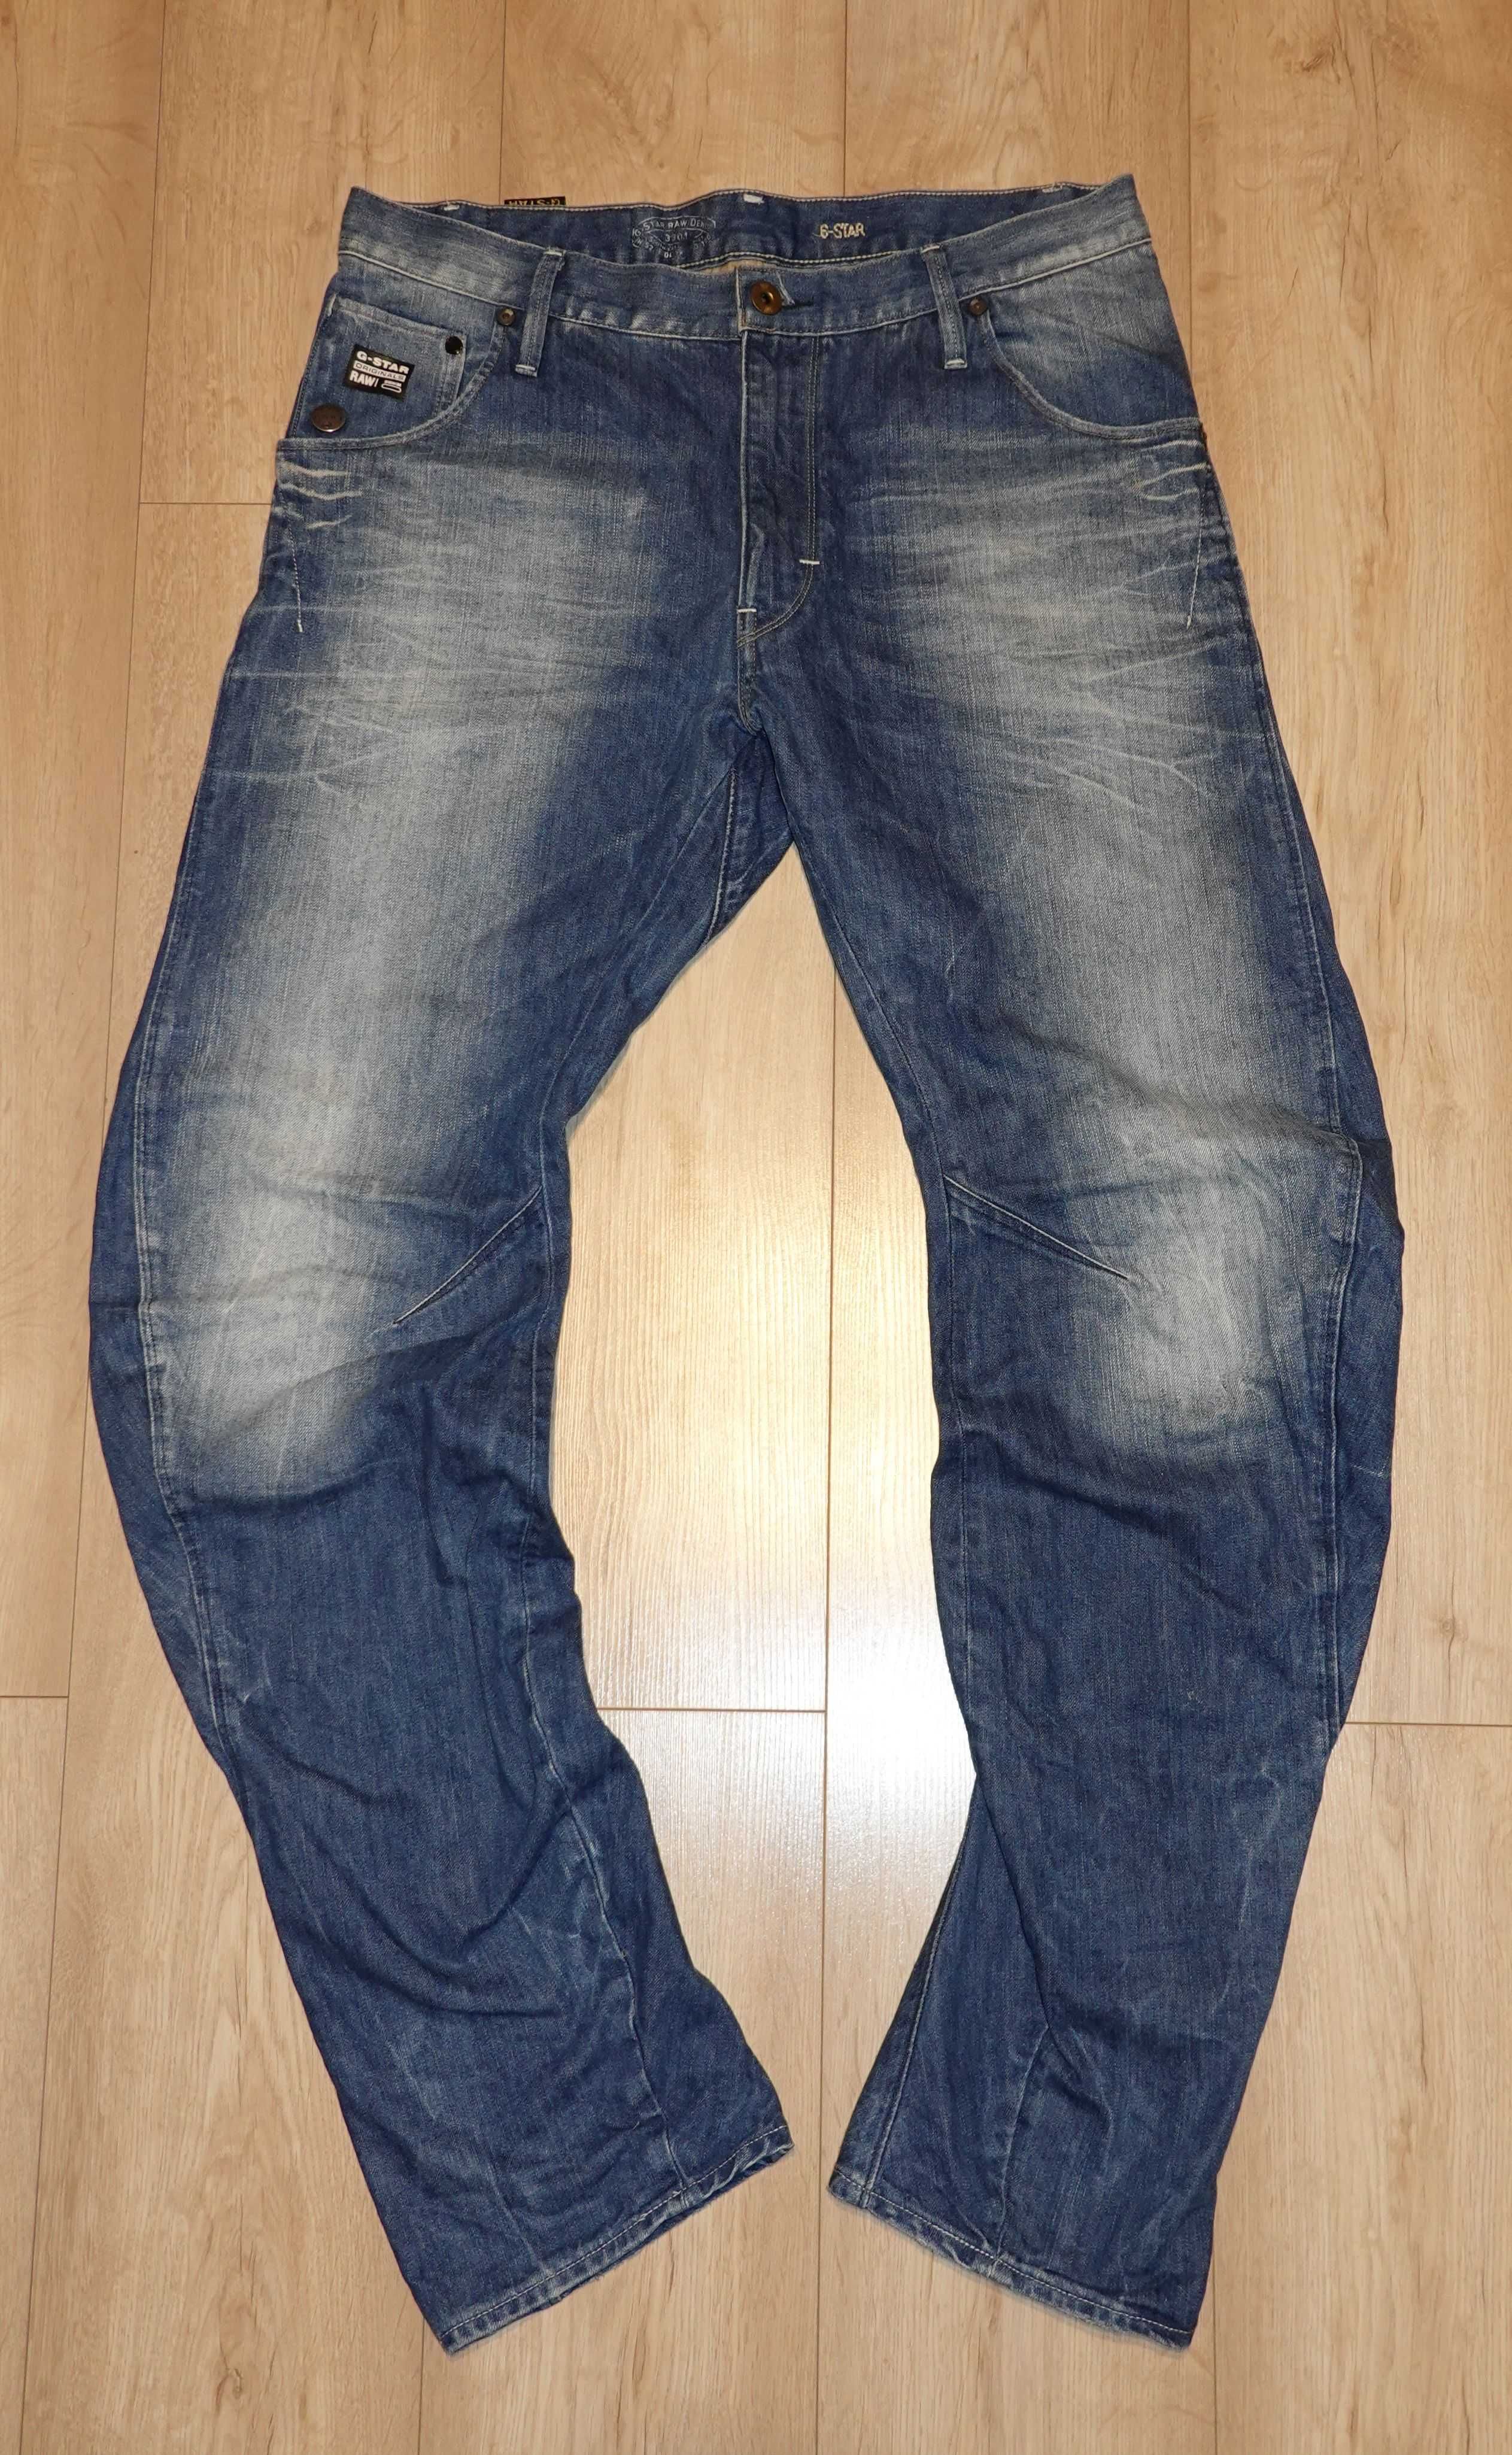 G-Star spodnie męskie 34/34 pas 89 cm